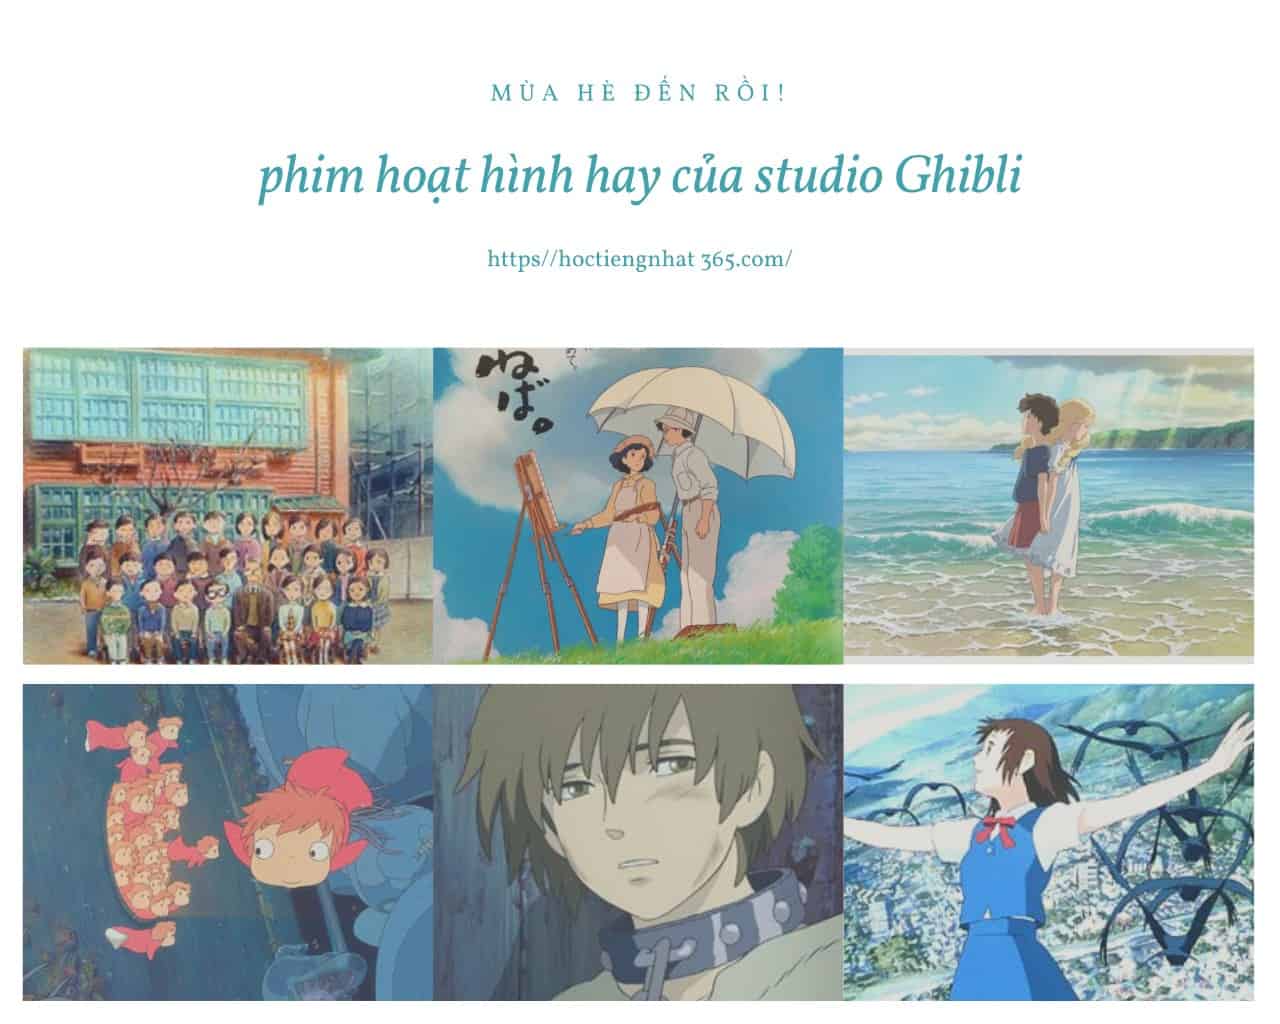 Studio Ghibli các phim đã sản xuất -6 bộ phim hoạt hình hay